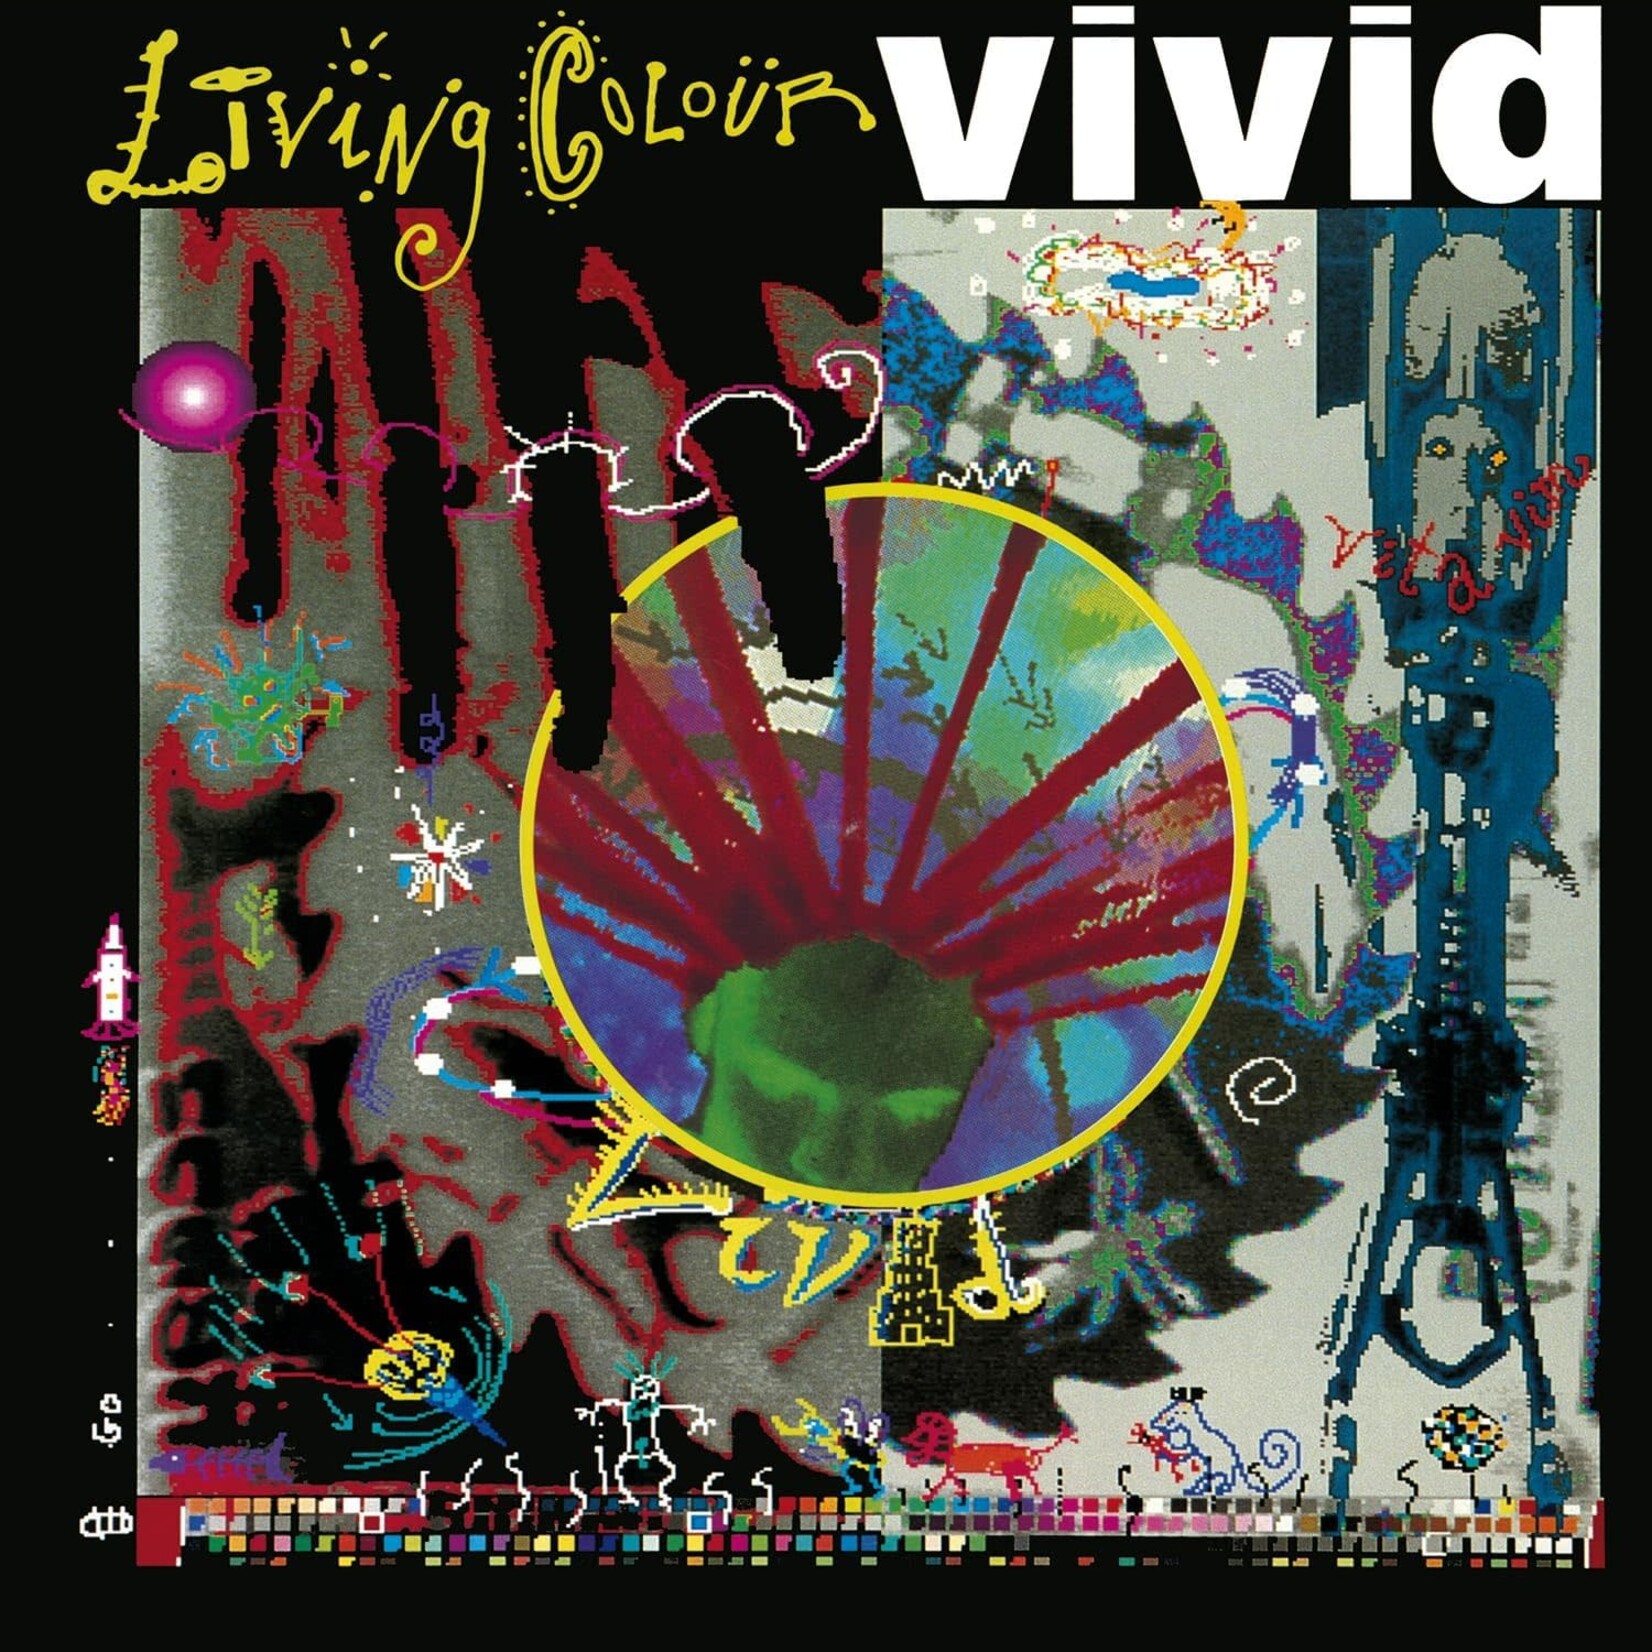 Vinyl Living Colour - Vivid